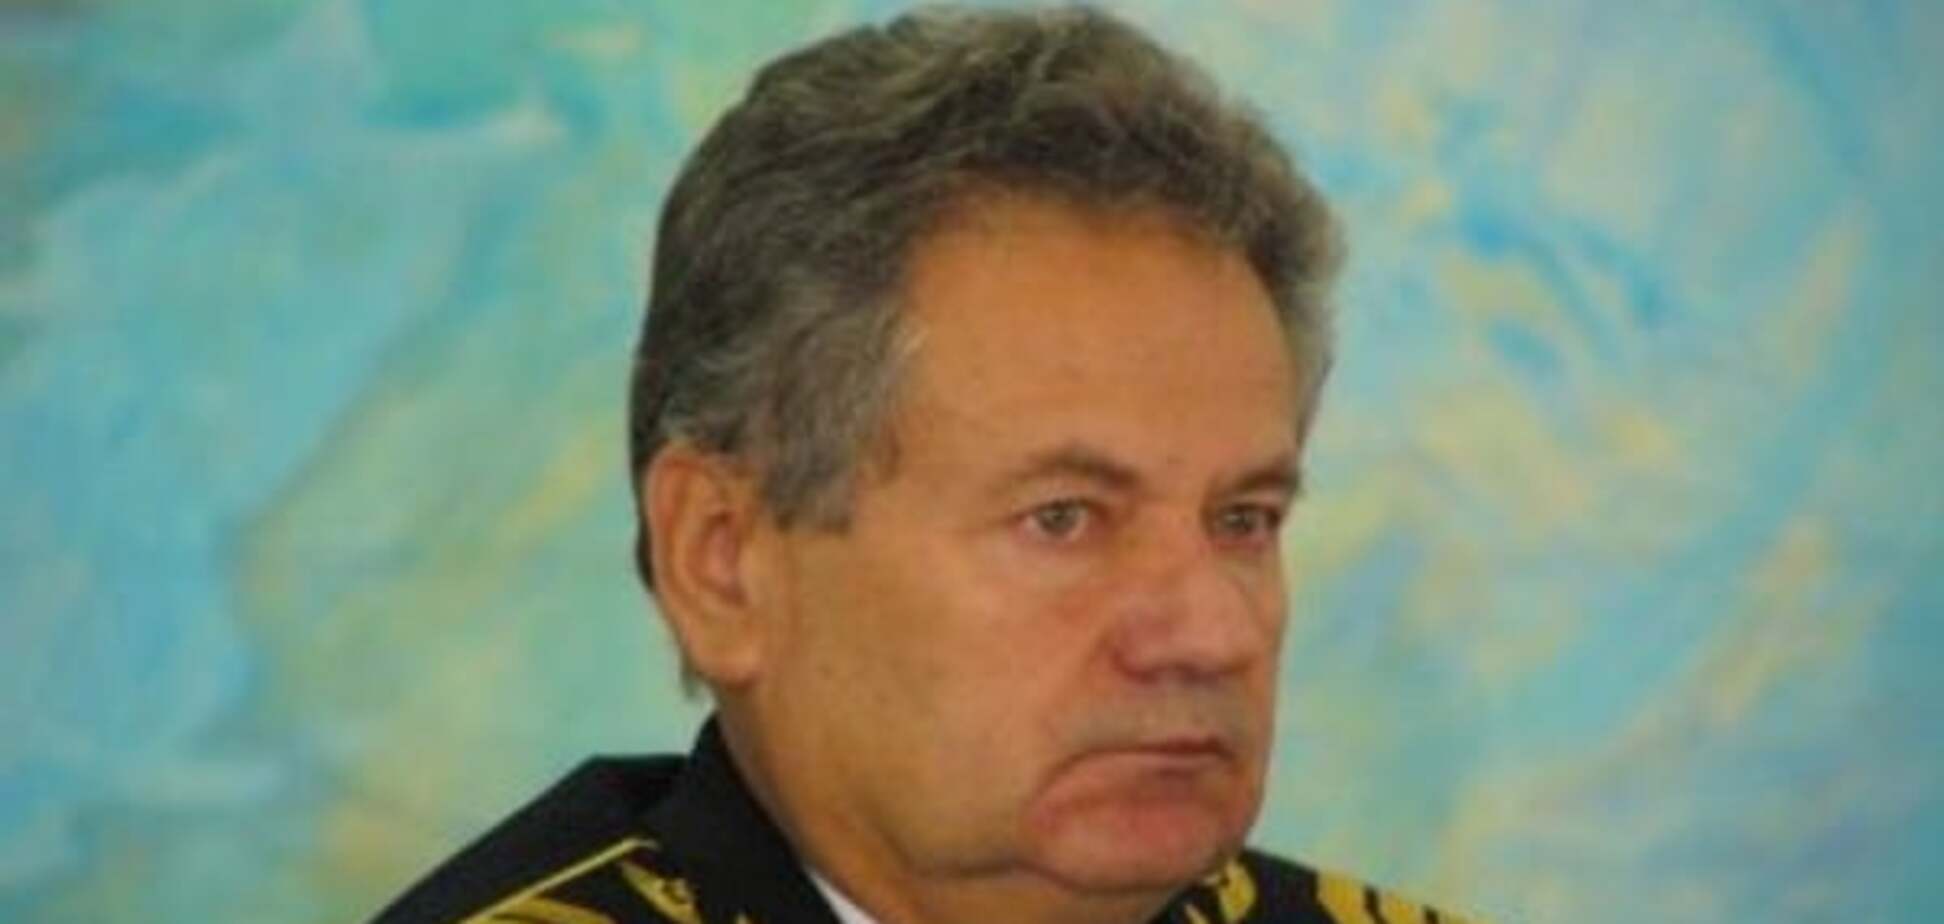 Владимир Харченко